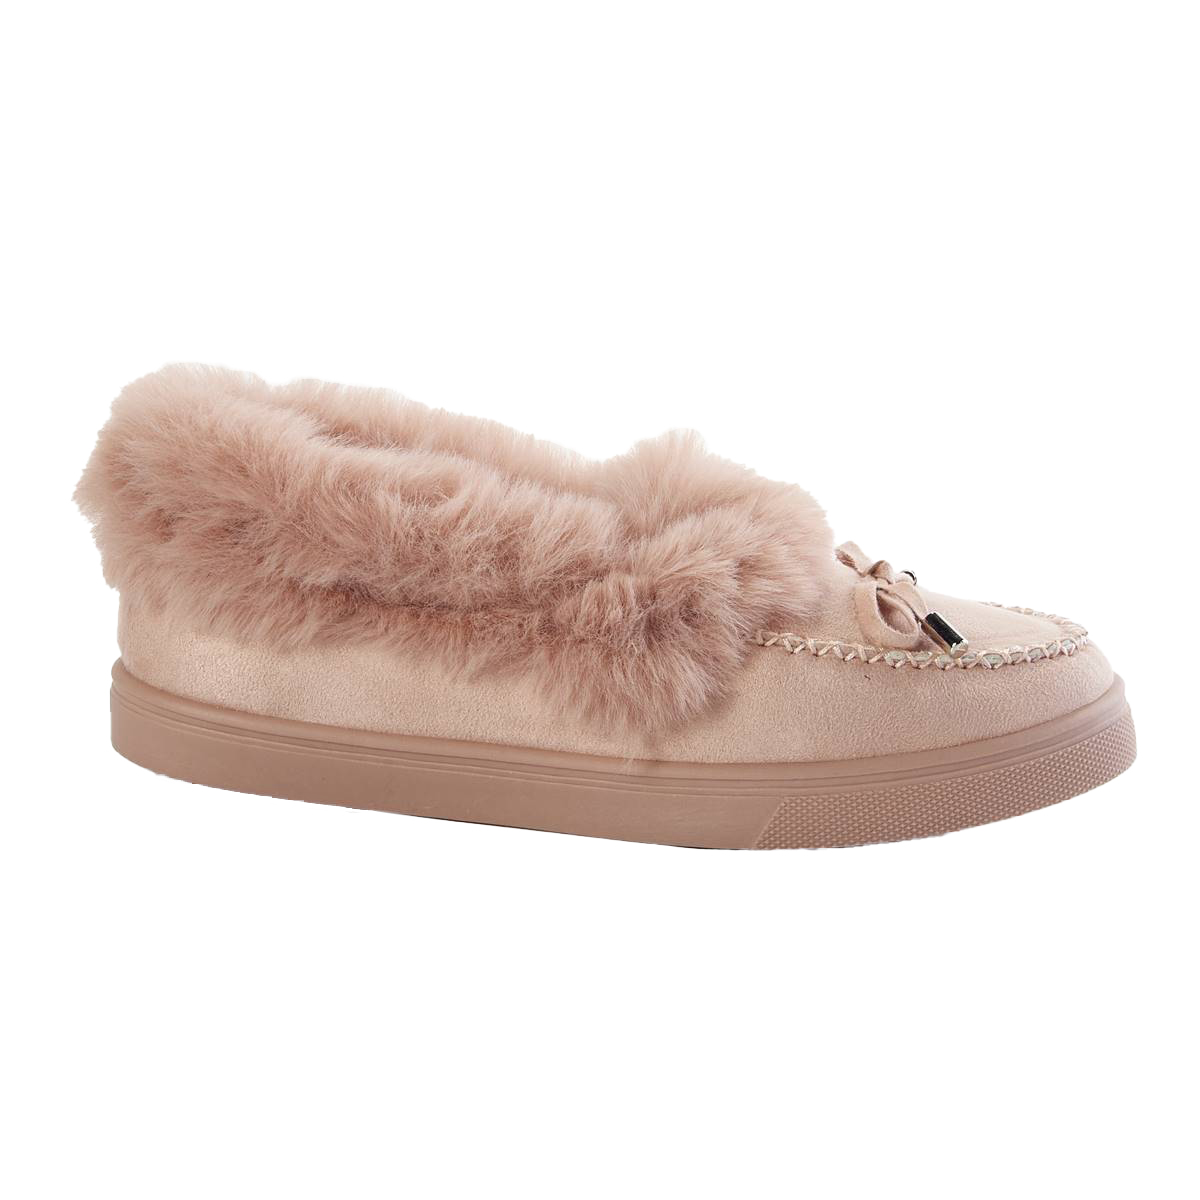 Big Girls Olivia Miller Fur Lined Slip On Shoes